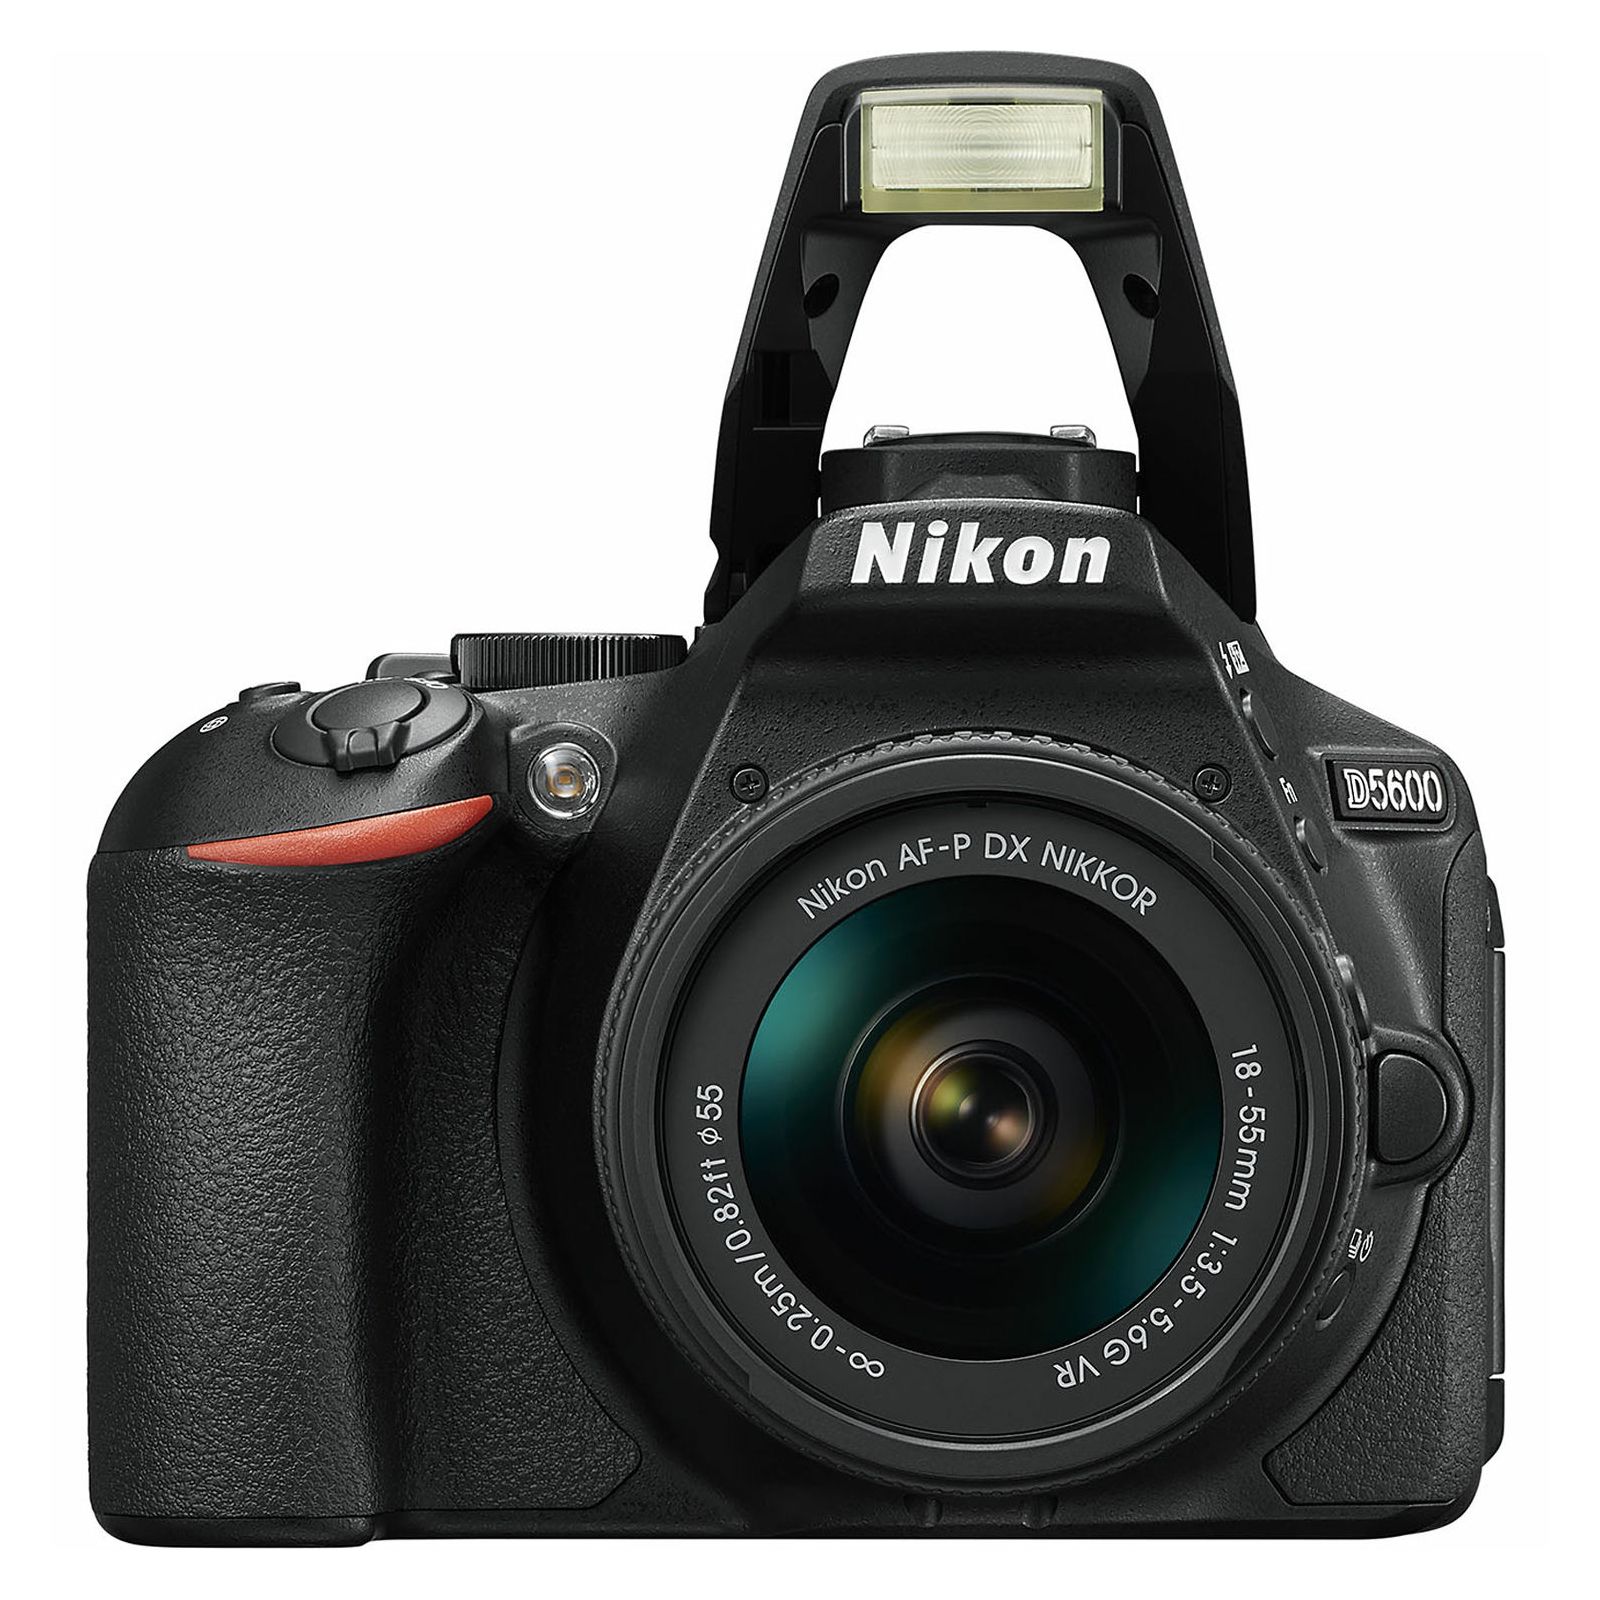 Nikon D5600 + AF-P 18-55 VR + AF-P 70-300 VR DX KIT DSLR Digitalni fotoaparat Camera with 18-55mm f/3.5-5.6 70-300mm lens (VBA500K004)